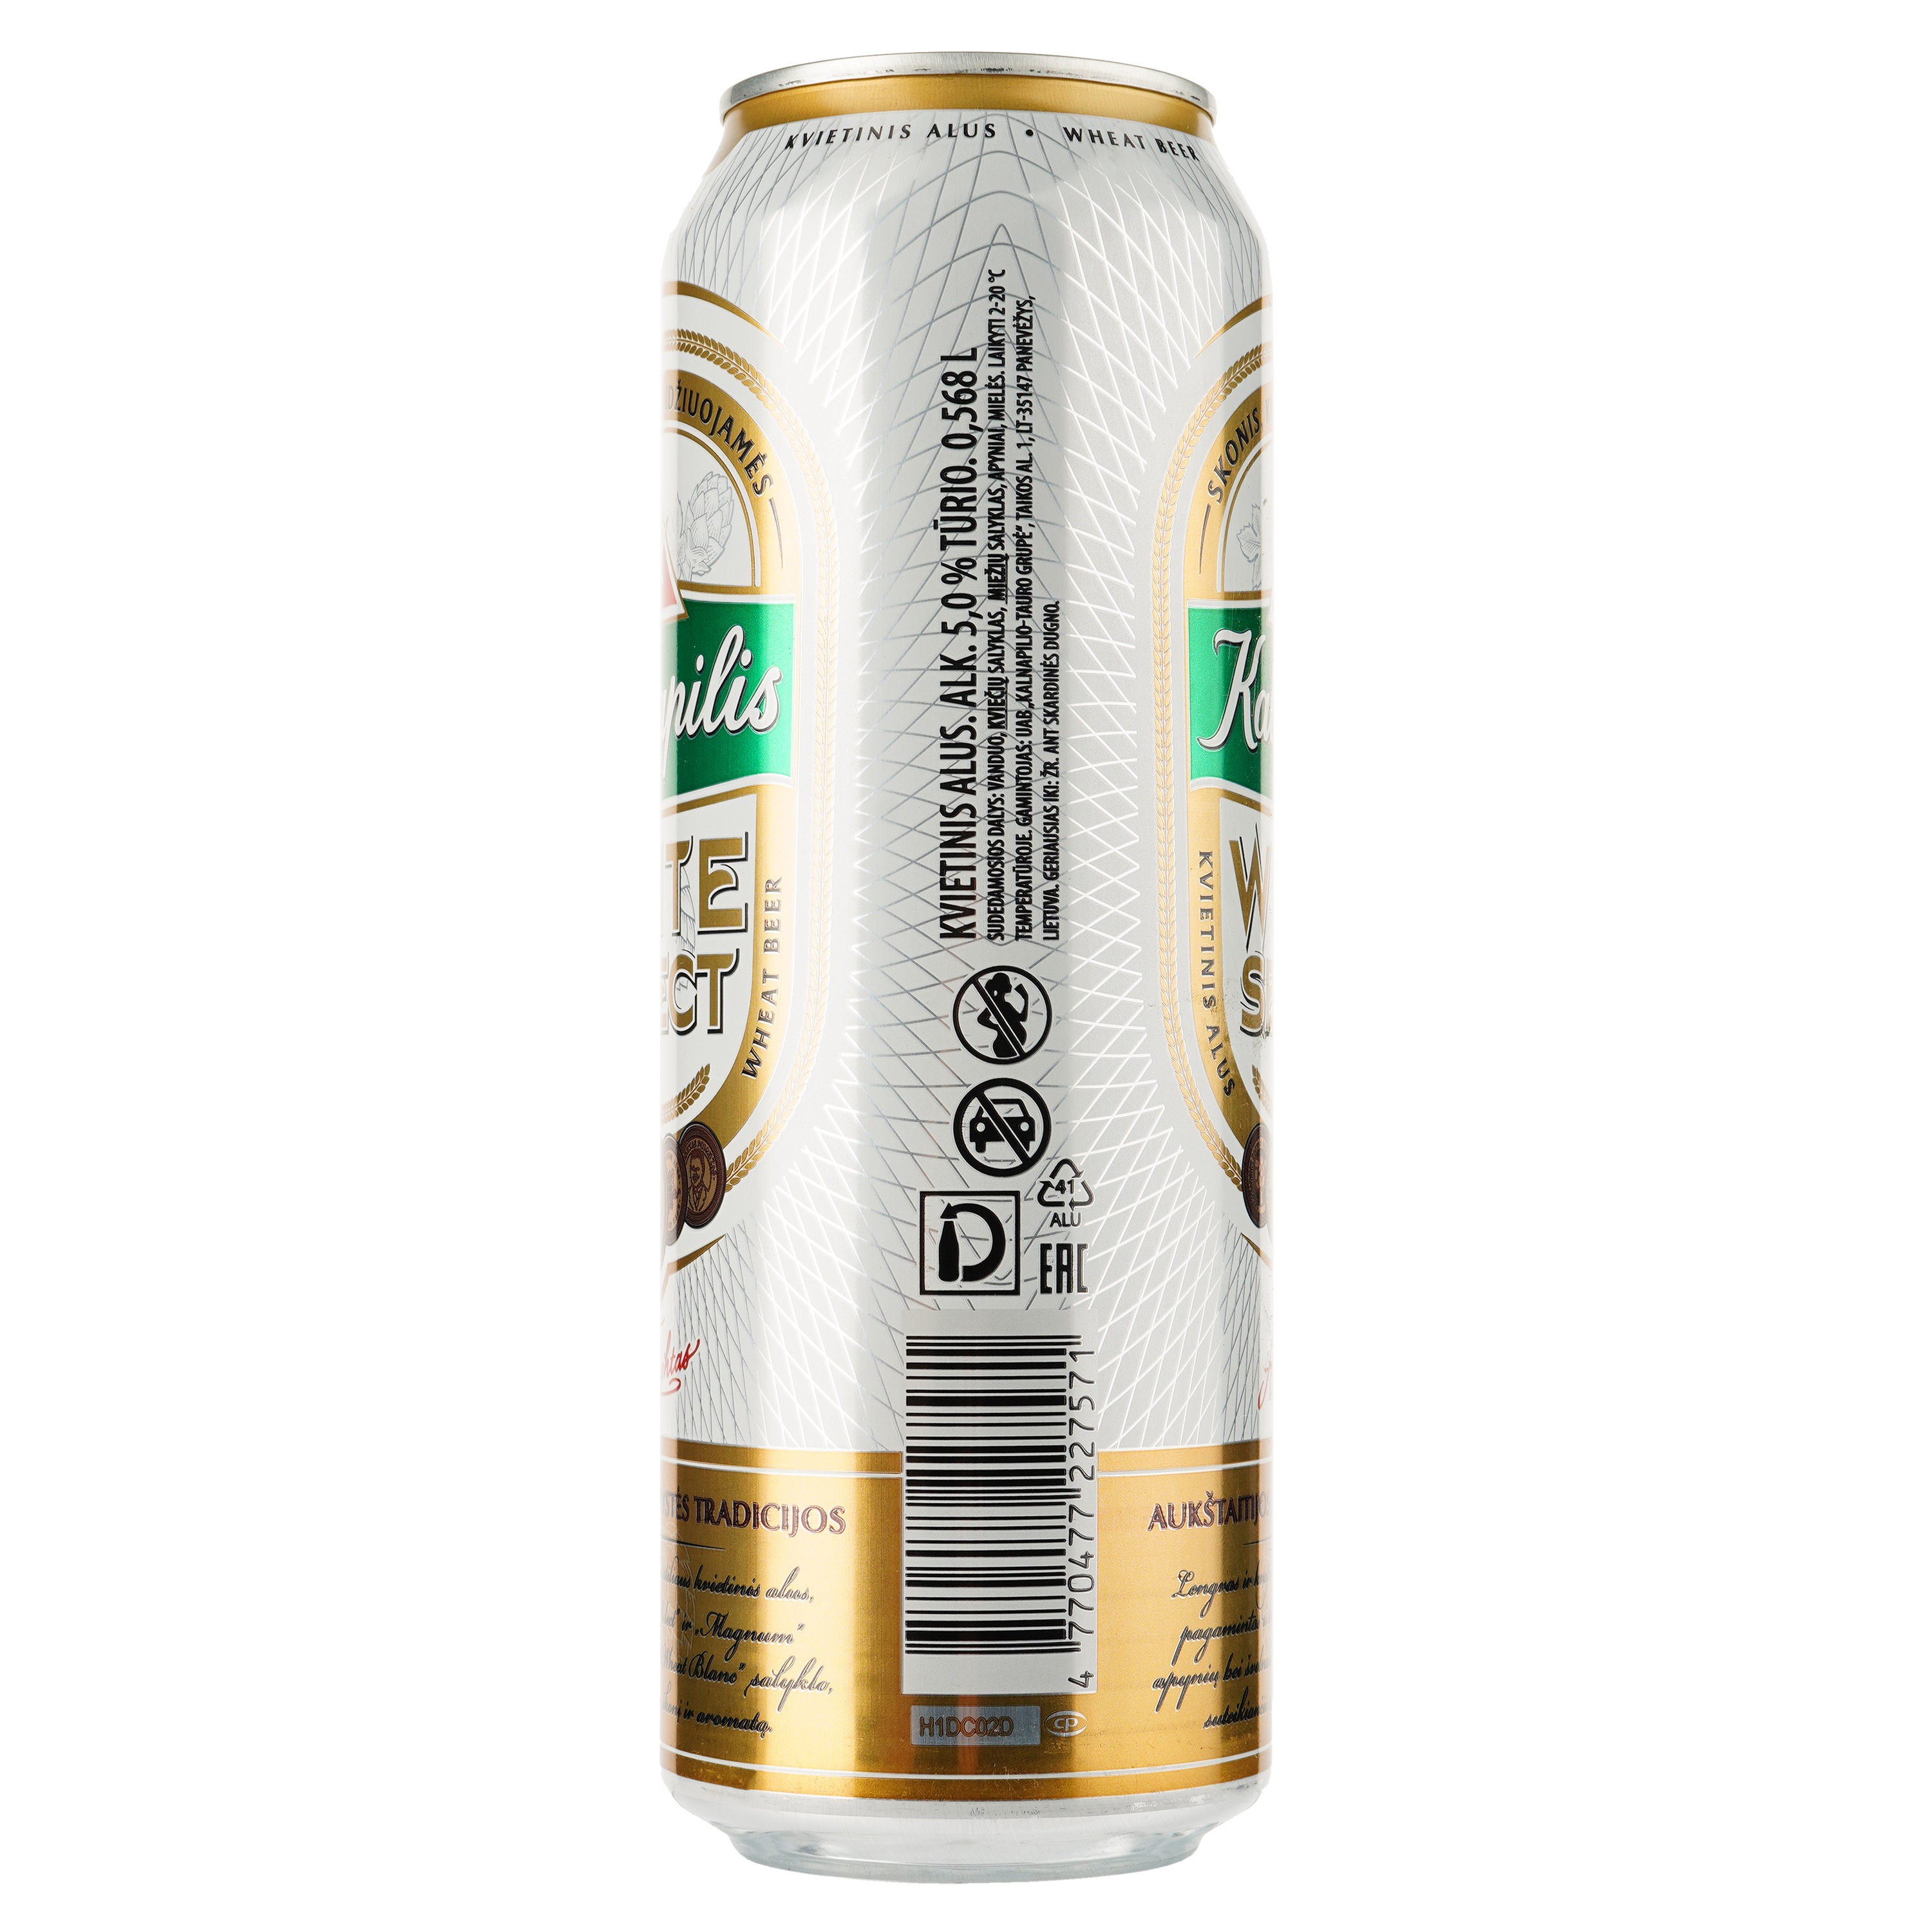 Пиво Kalnapilis White Select, светлое 5%, ж/б, 0.568 л - фото 2